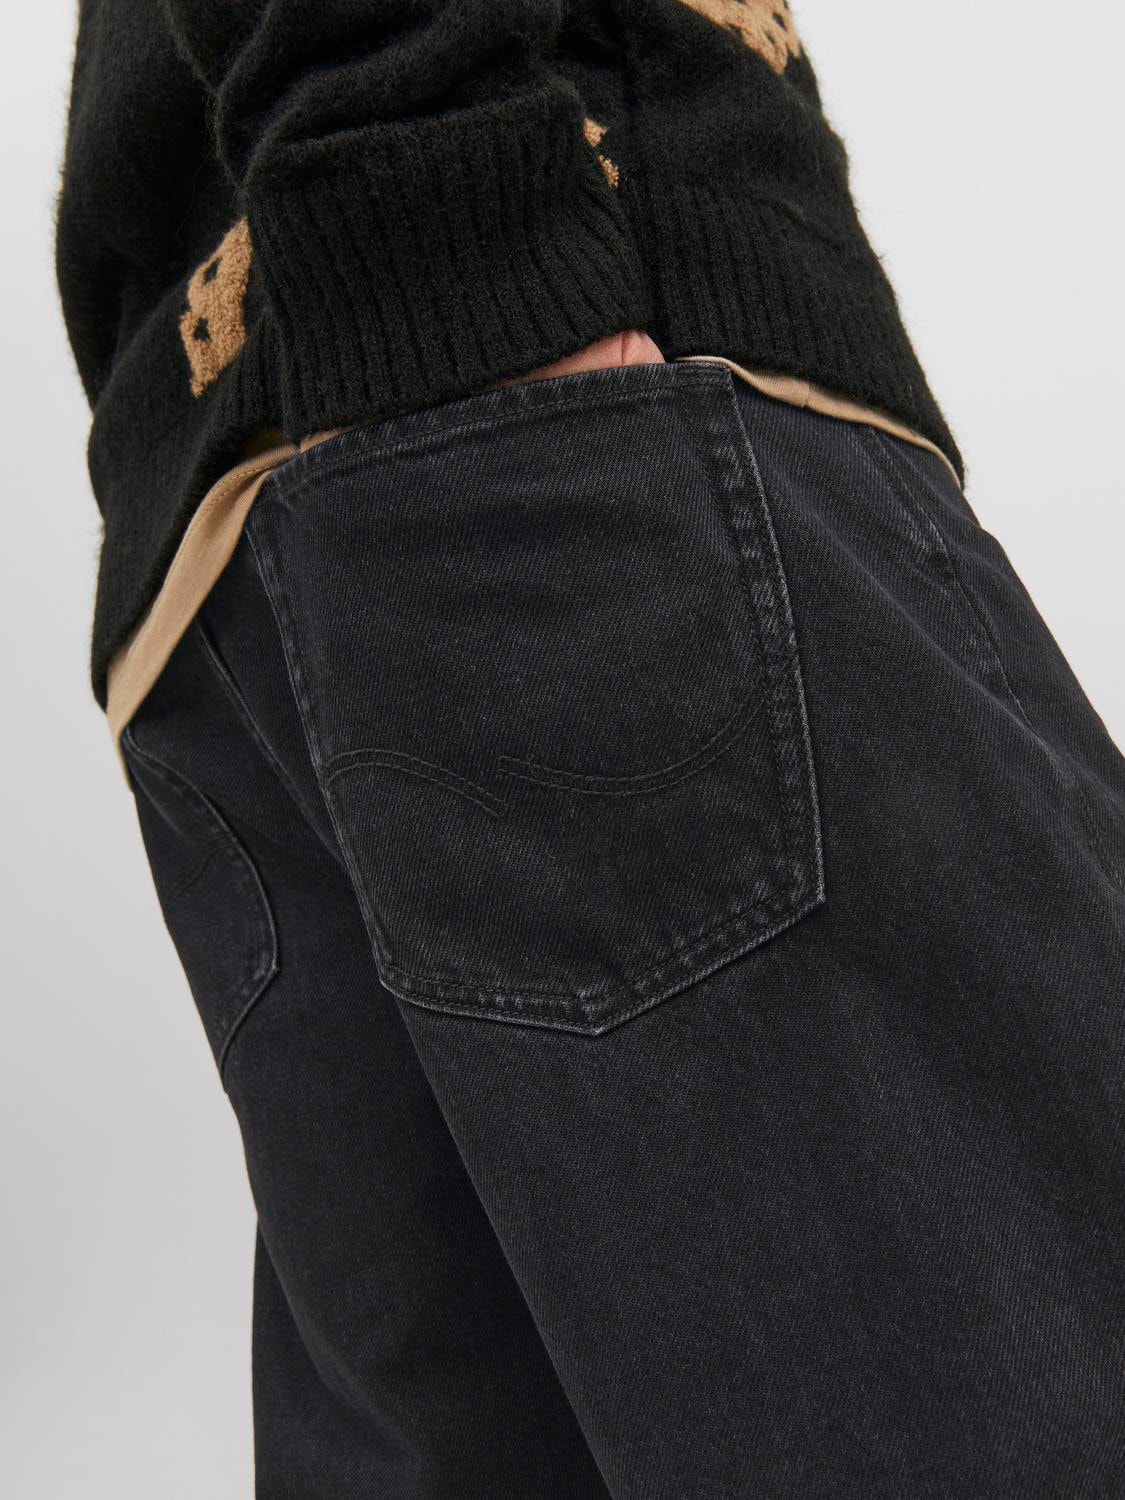 JJIALEX JJORIGINAL SBD 306 Baggy fit jeans